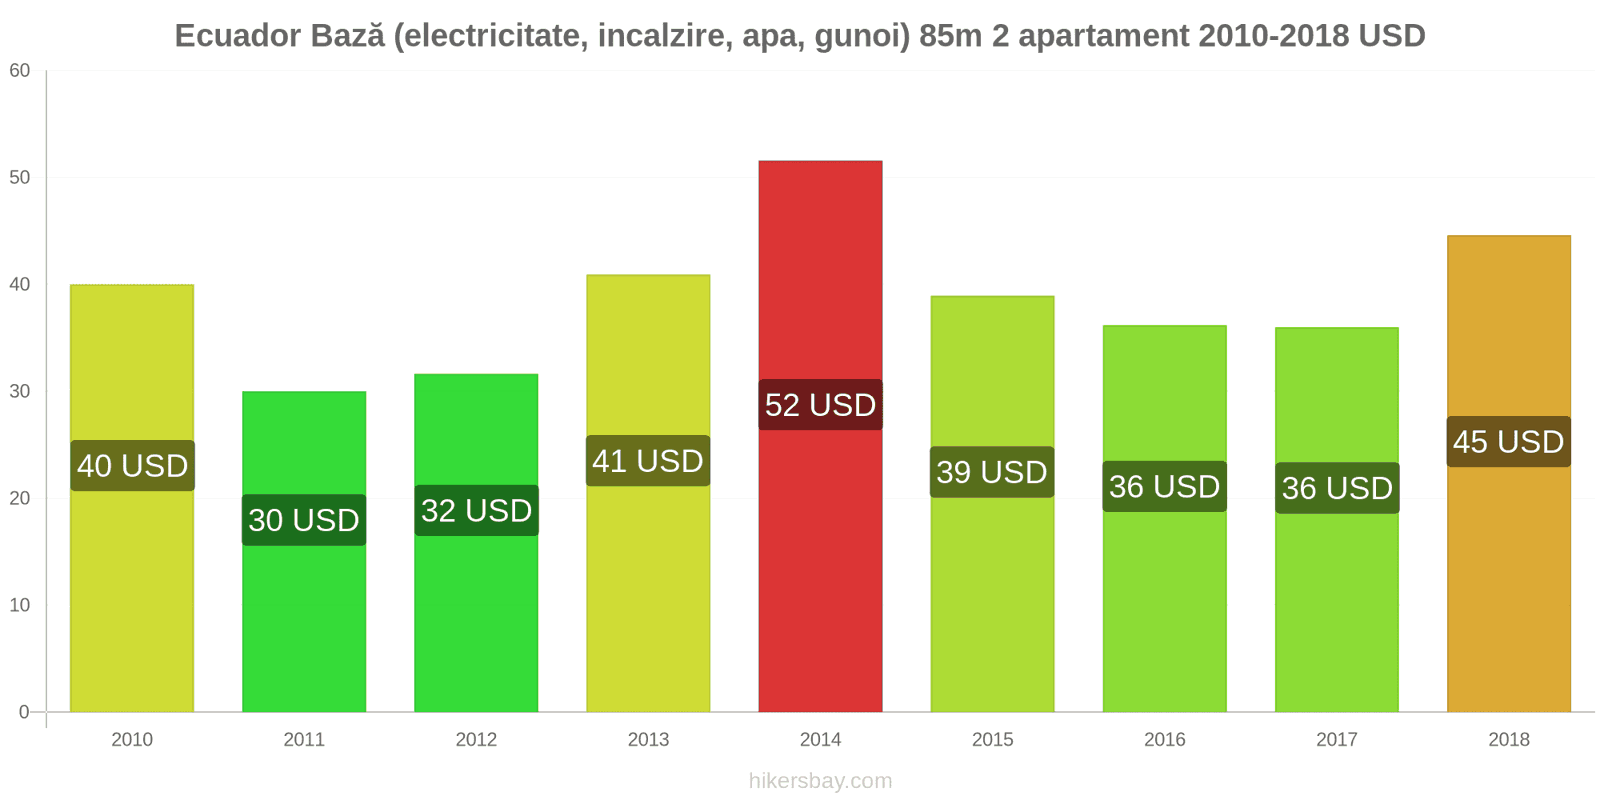 Ecuador schimbări de prețuri Utilități (electricitate, încălzire, apă, gunoi) pentru un apartament de 85m2 hikersbay.com